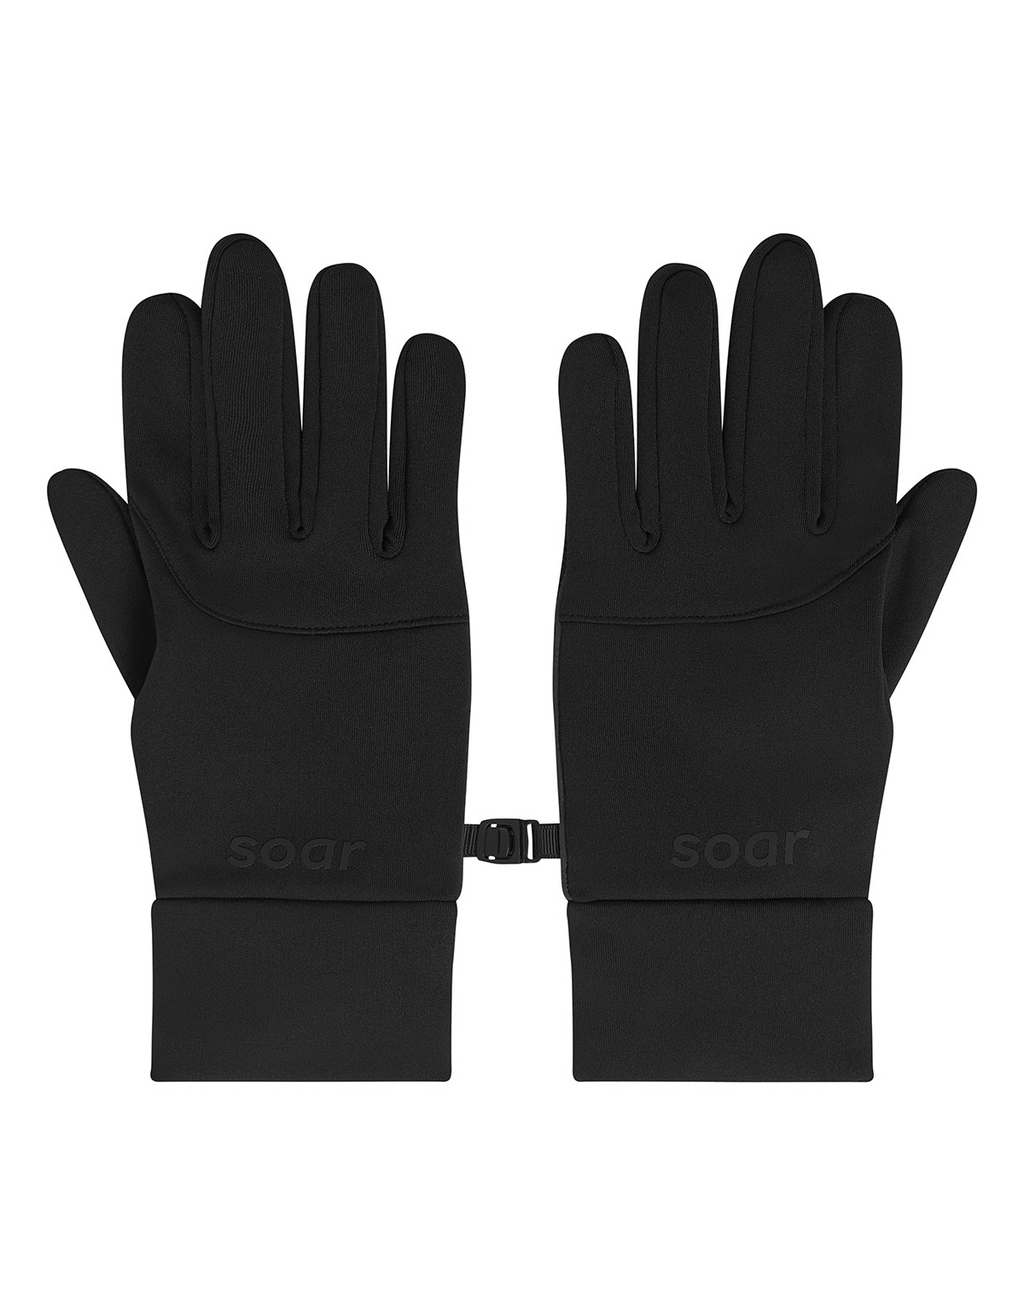 Soar Winter Gloves